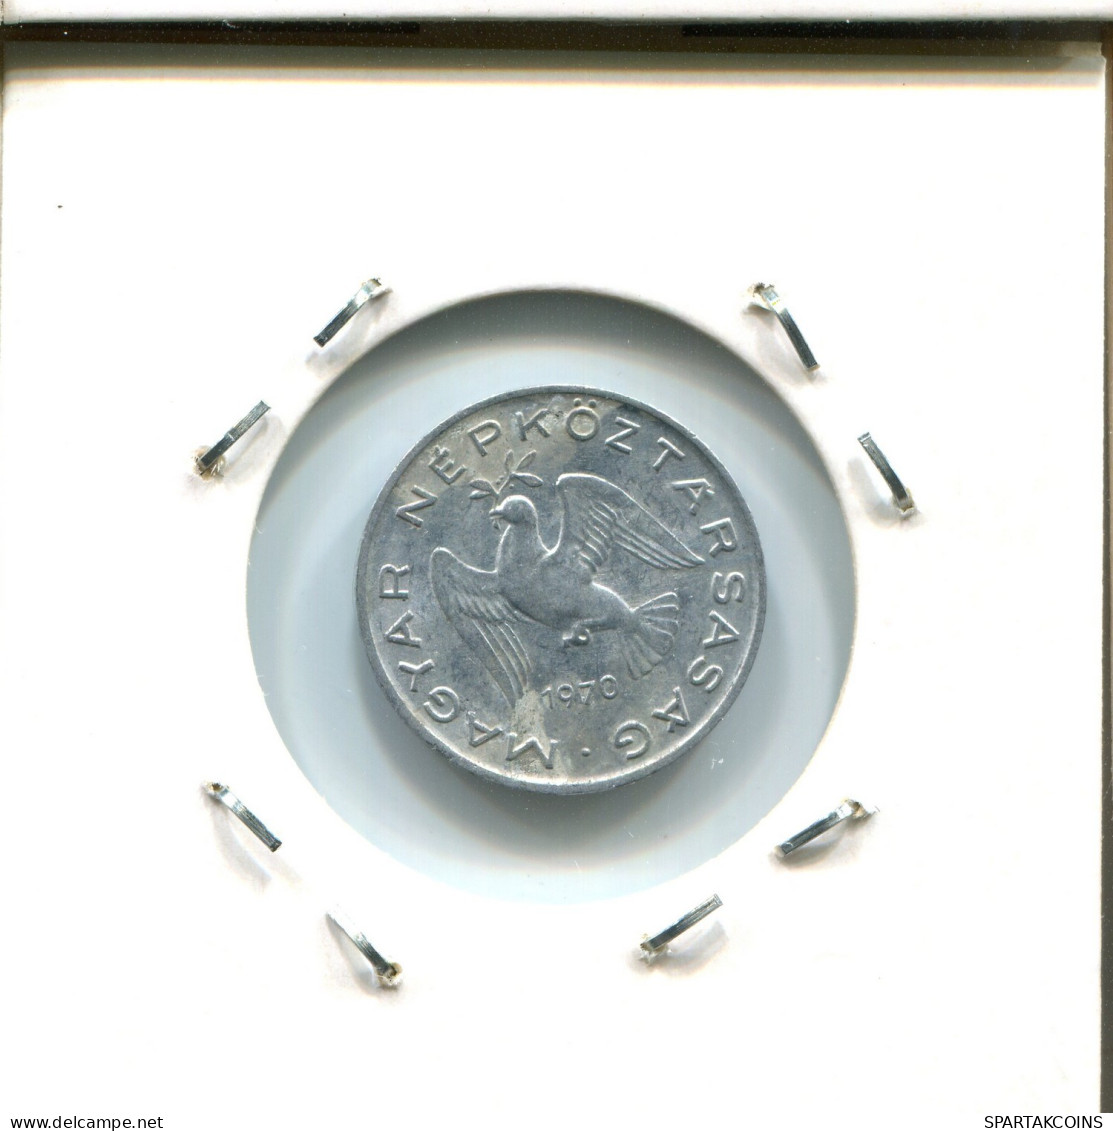 10 FILLER 1970 HUNGARY Coin #AY125.2.U.A - Ungarn